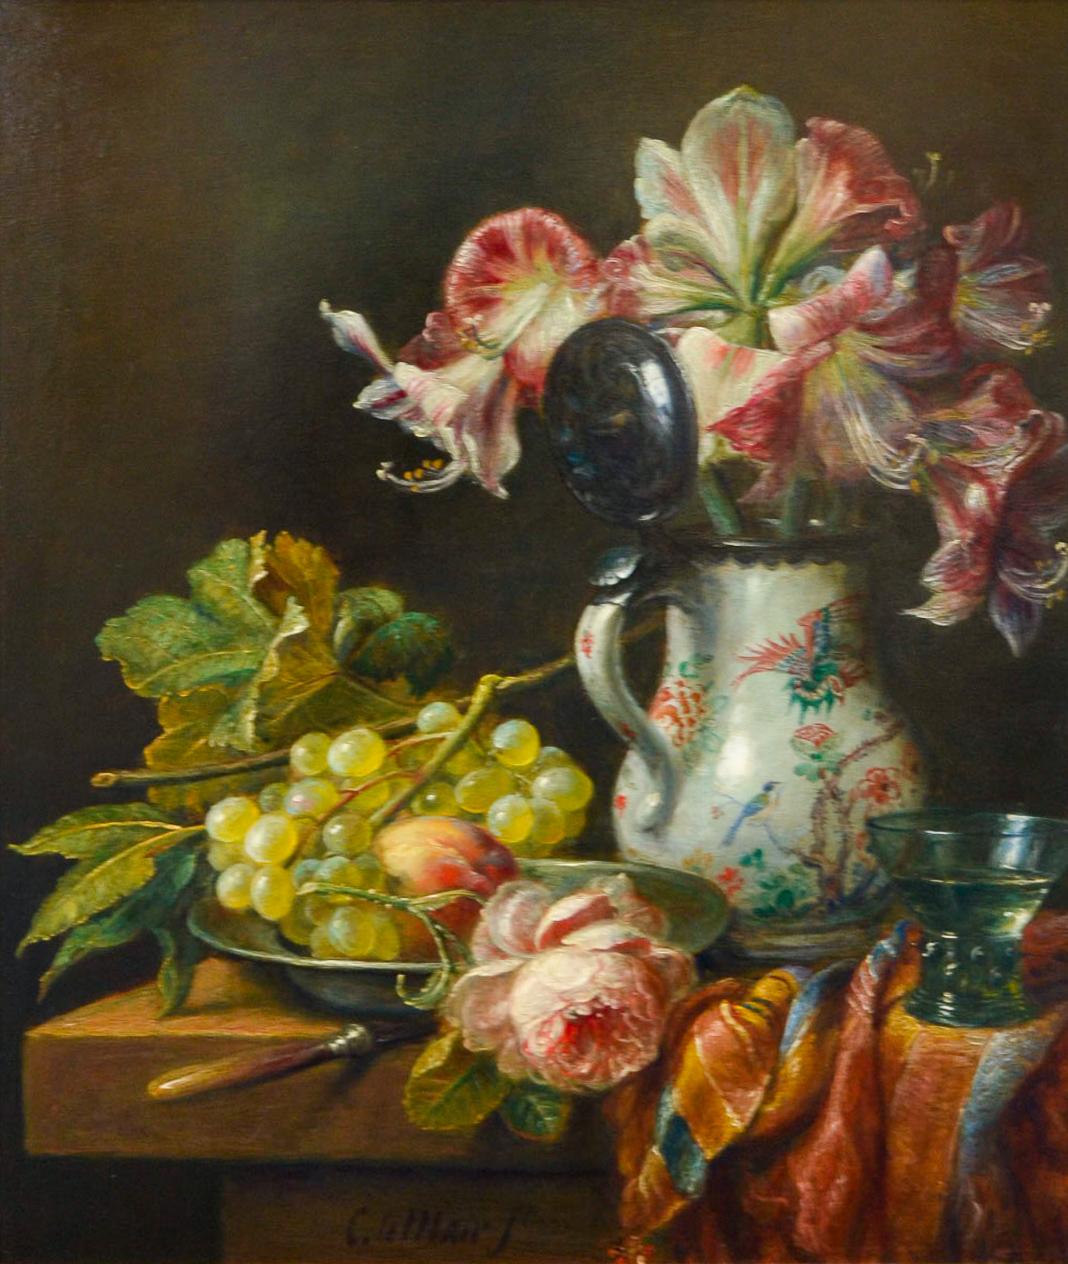 Figurative Painting Cornelis Le Mair - Pichet de Chine, raisins et fleurs - Peinture de nature morte de style classique néerlandais